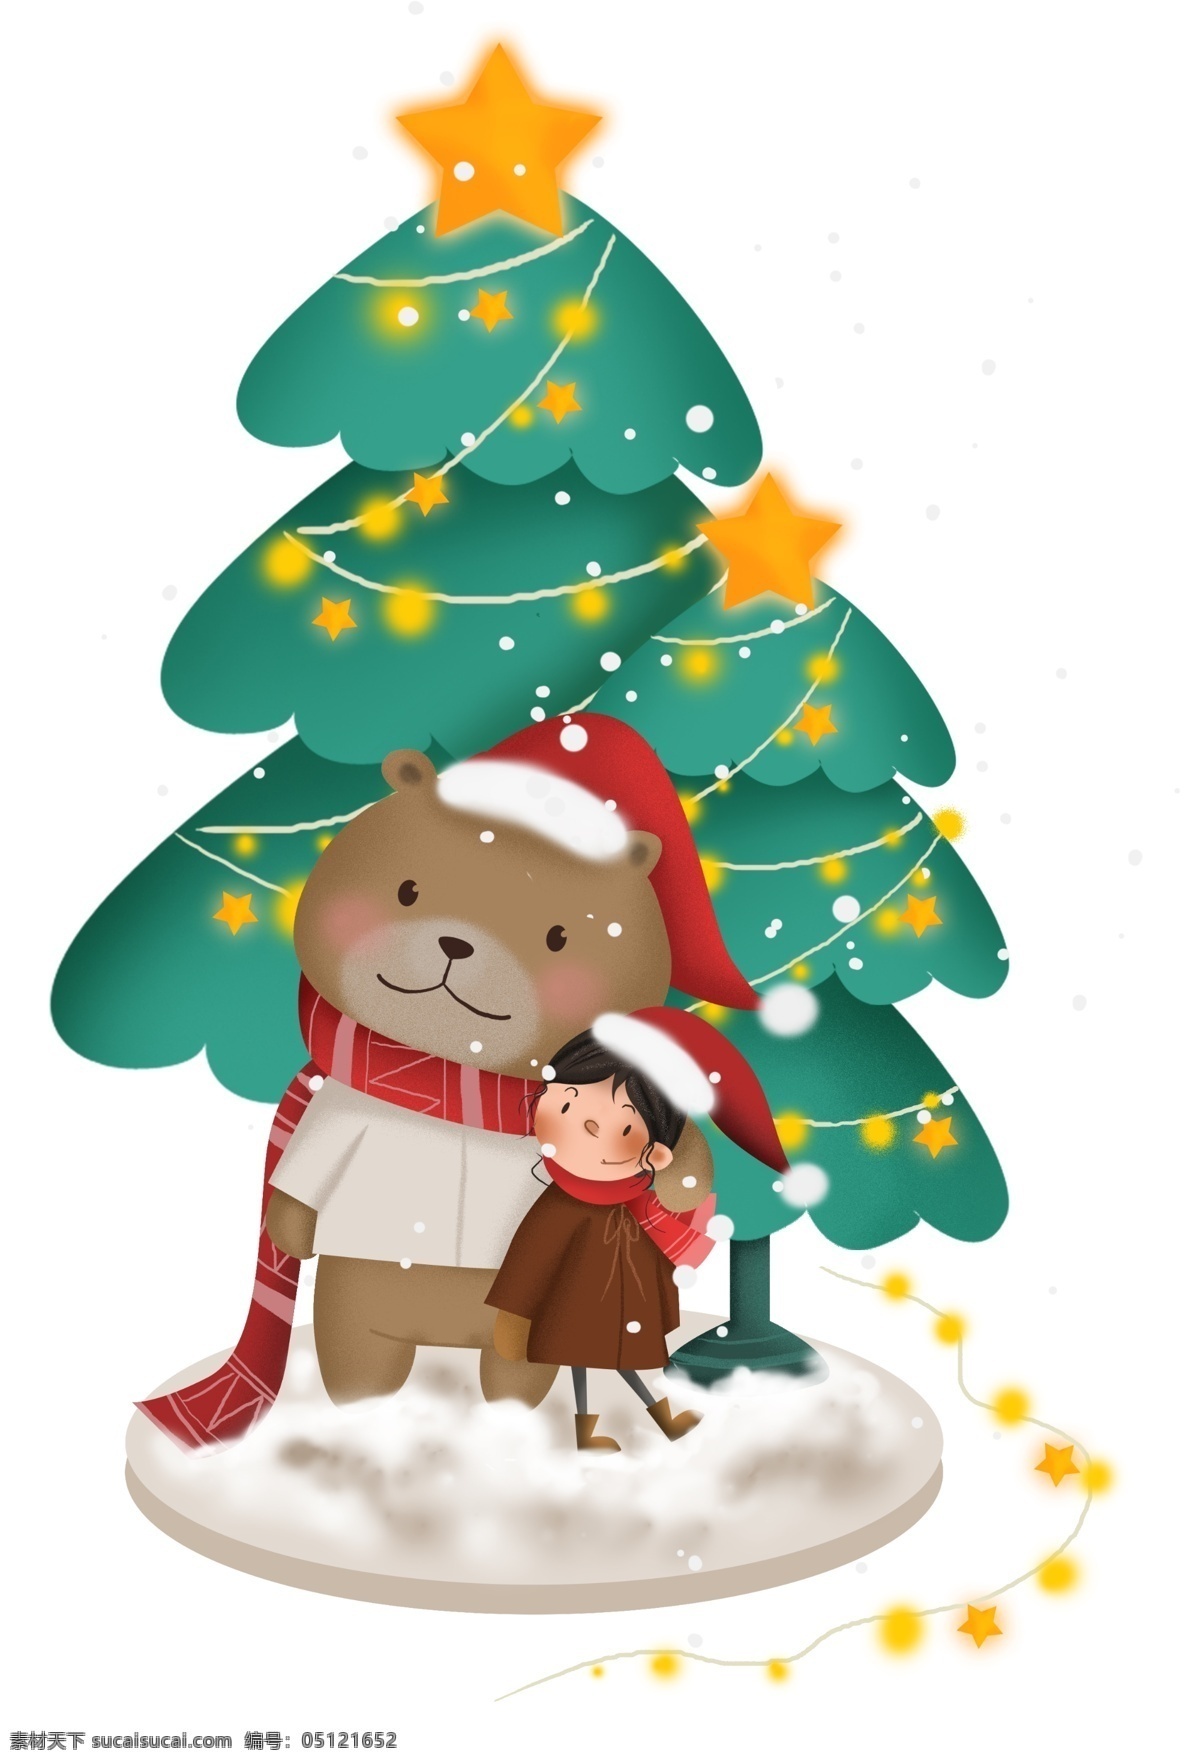 圣诞节 圣诞 树下 小 熊 儿童 女孩 雪花 礼物 圣诞树 星星 商场活动 幼儿园 雪地 小熊 下雪